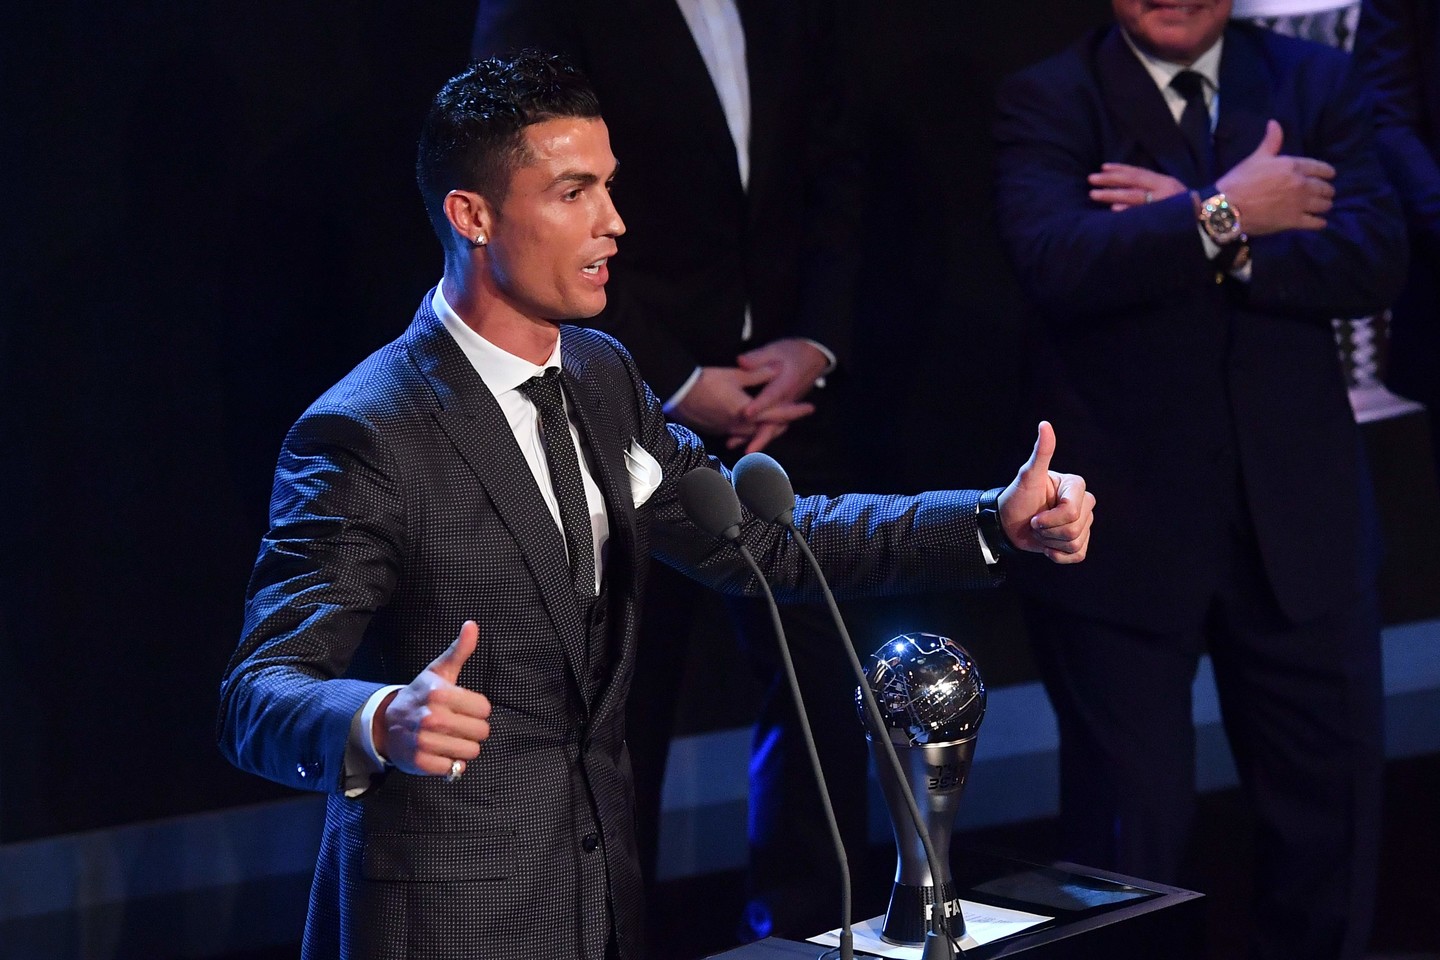  C.Ronaldo vėl laimėjo geriausio FIFA futbolininko apdovanojimą.<br> AFP/Scanpix nuotr.